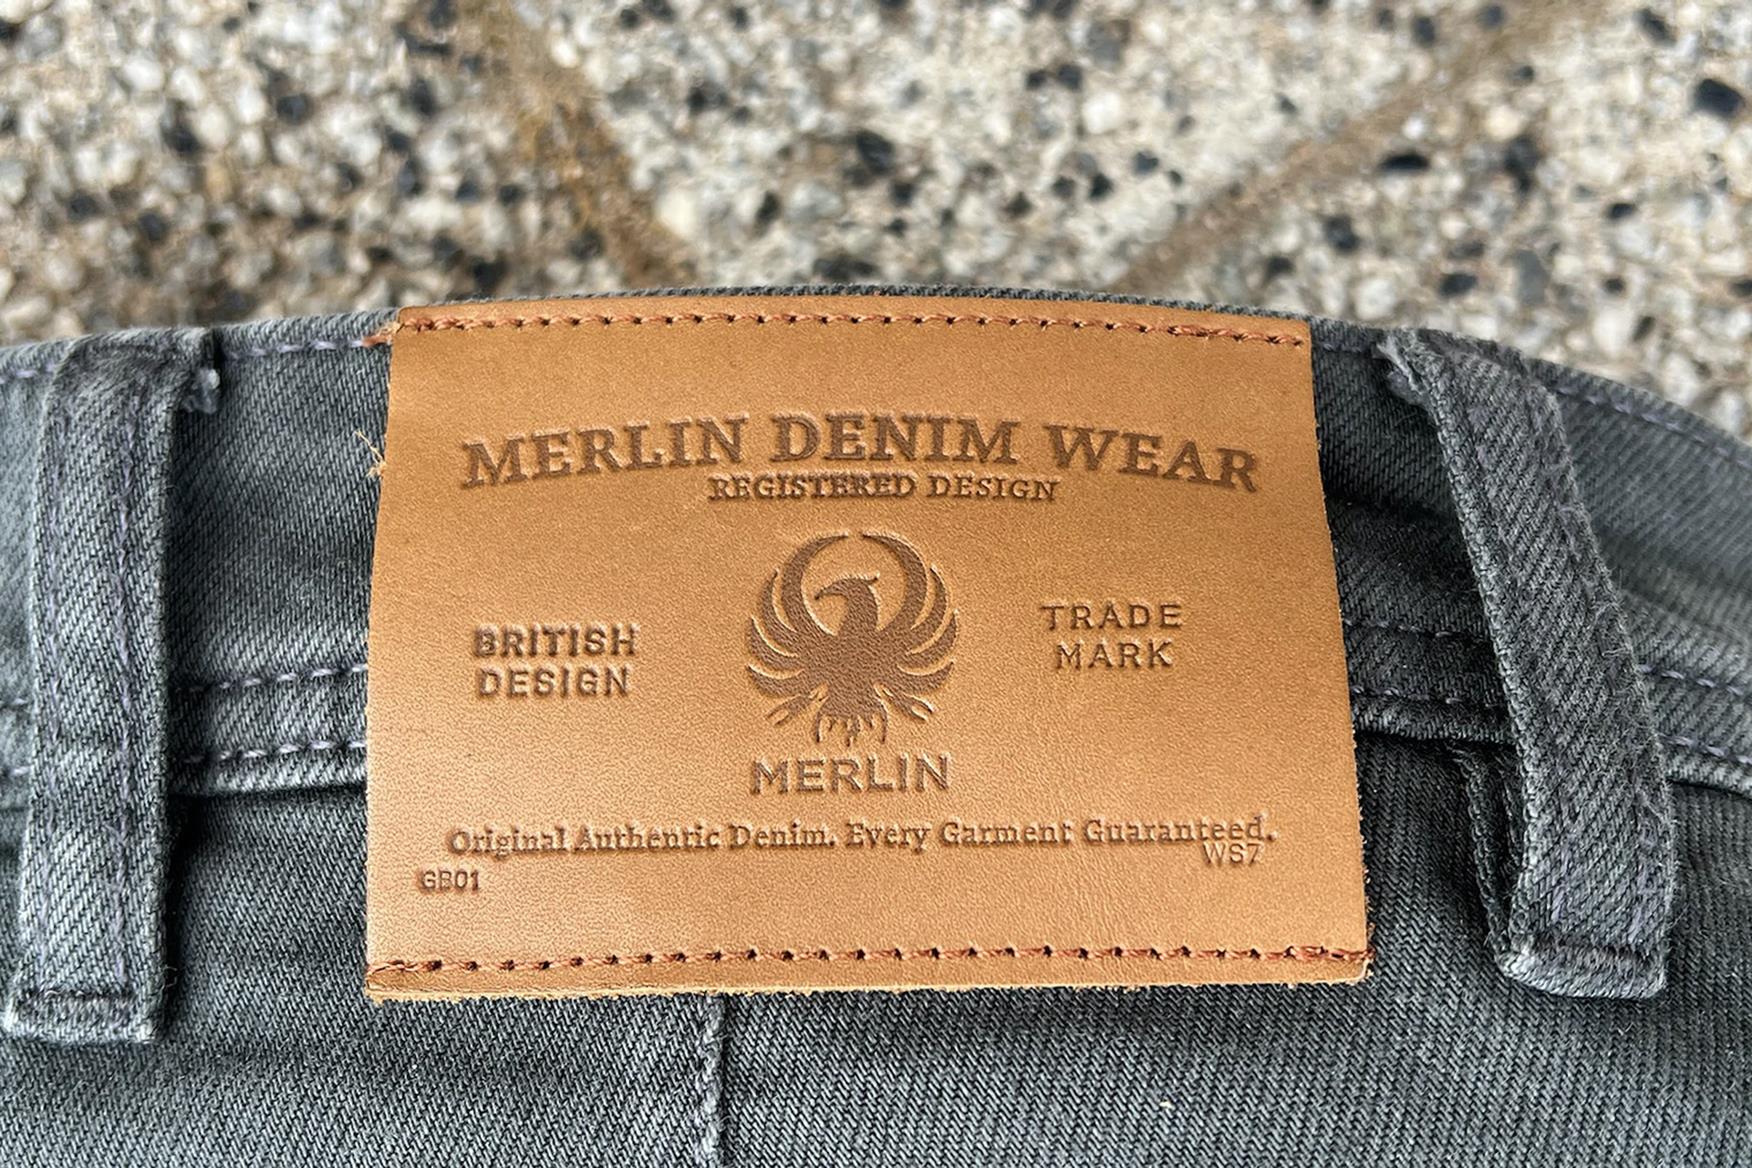 Merlin Bike Gear - Mason Reinforced Denim Motorcycle Jeans